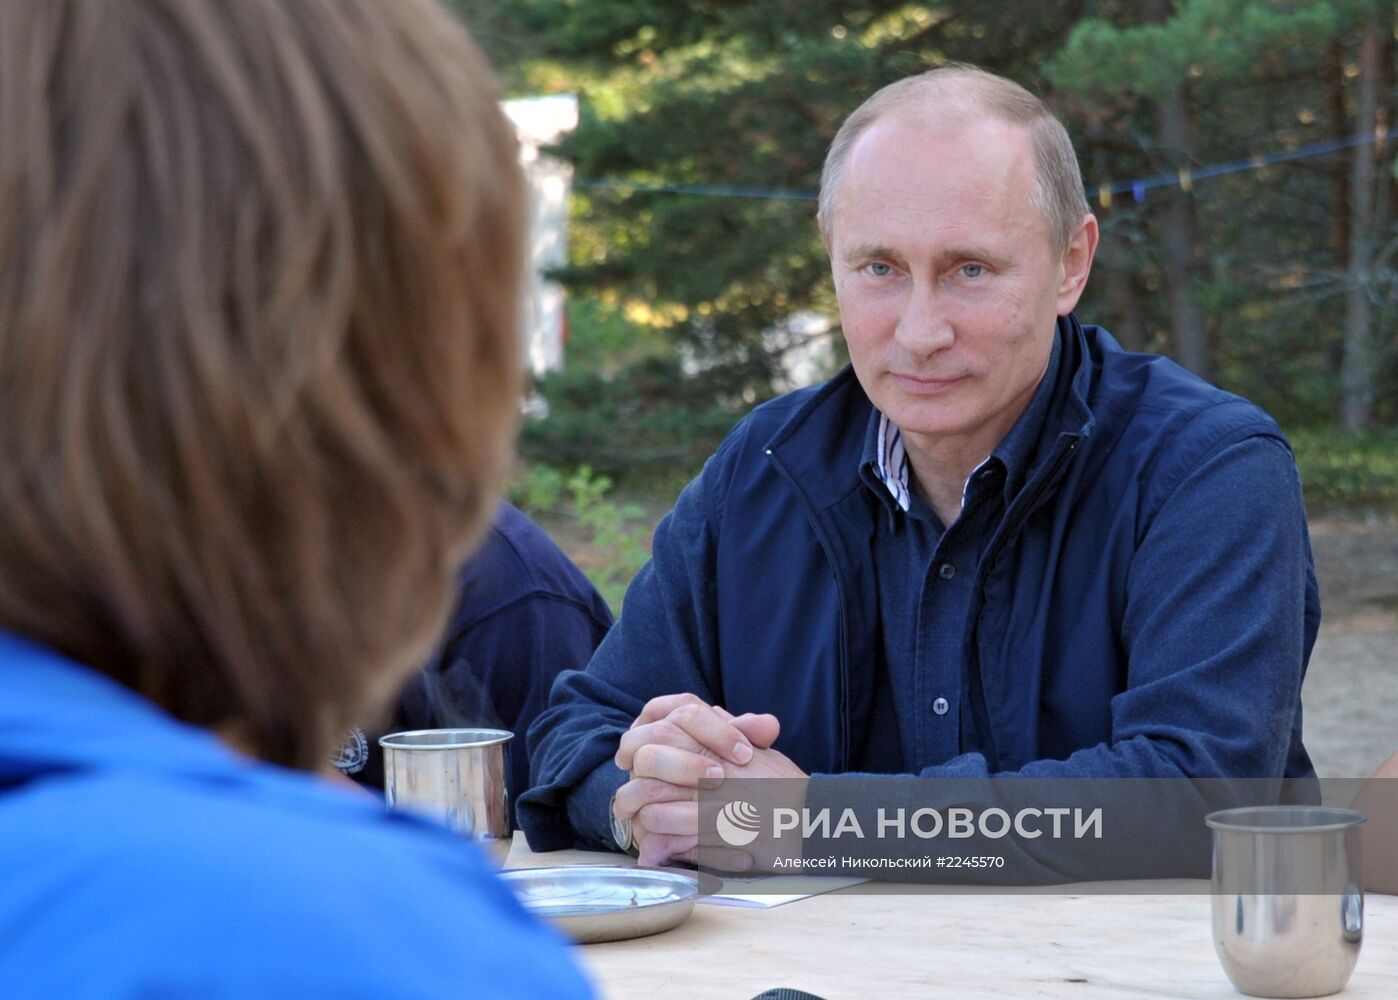 В.Путин посетил остров Гогланд в Финском заливе